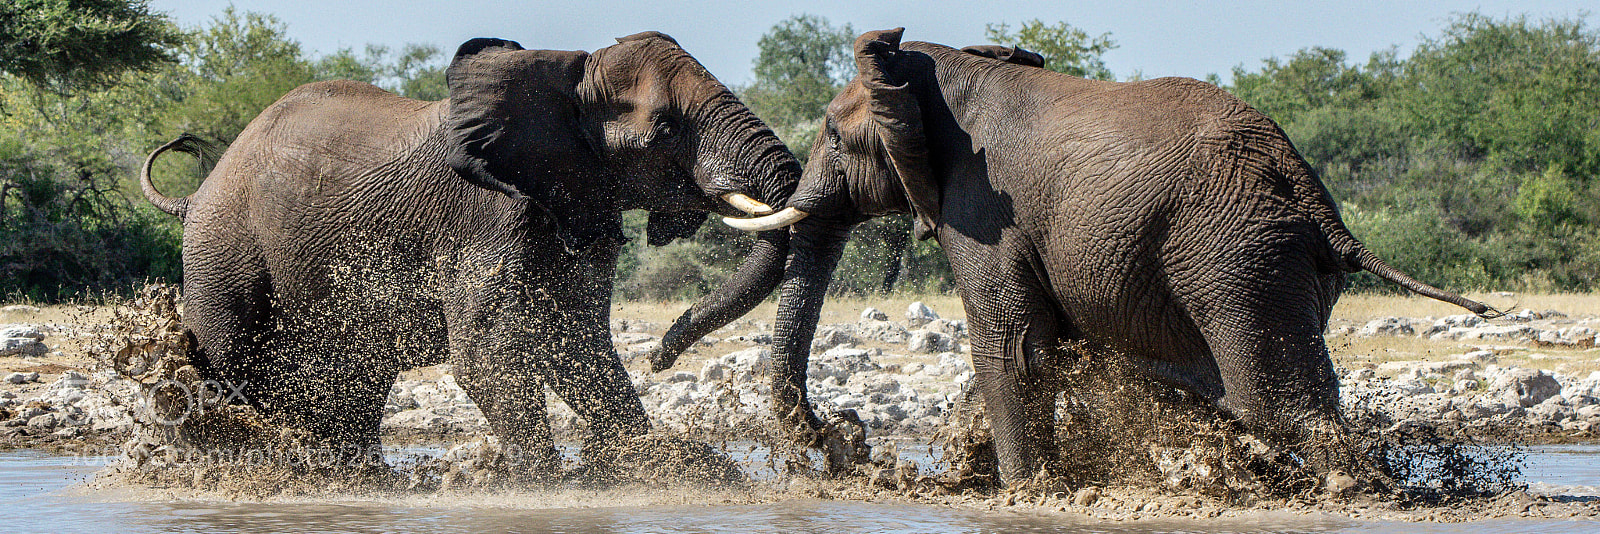 Pentax K-3 II sample photo. Fighting elephants photography